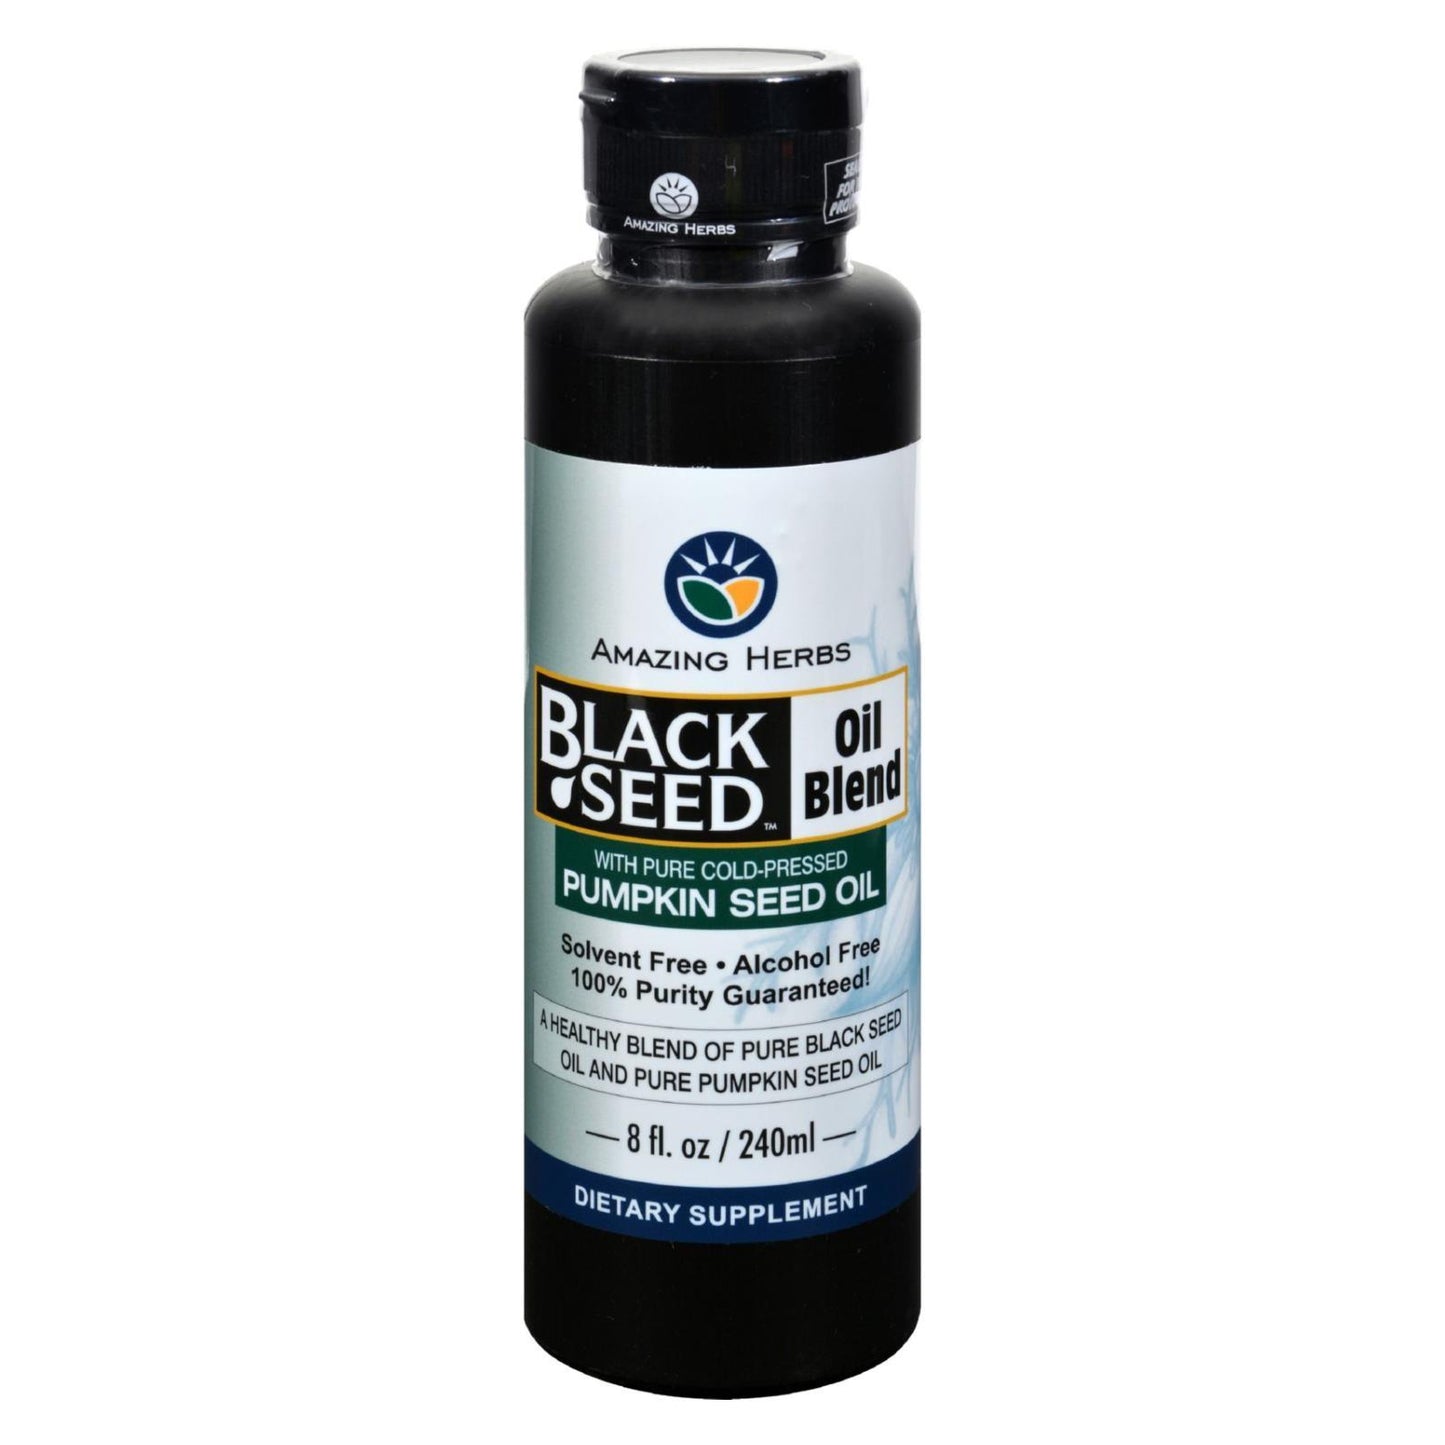 Amazing Herbs - Black Seed Oil Blend - Styrian Pumpkin Seed - 8 Oz